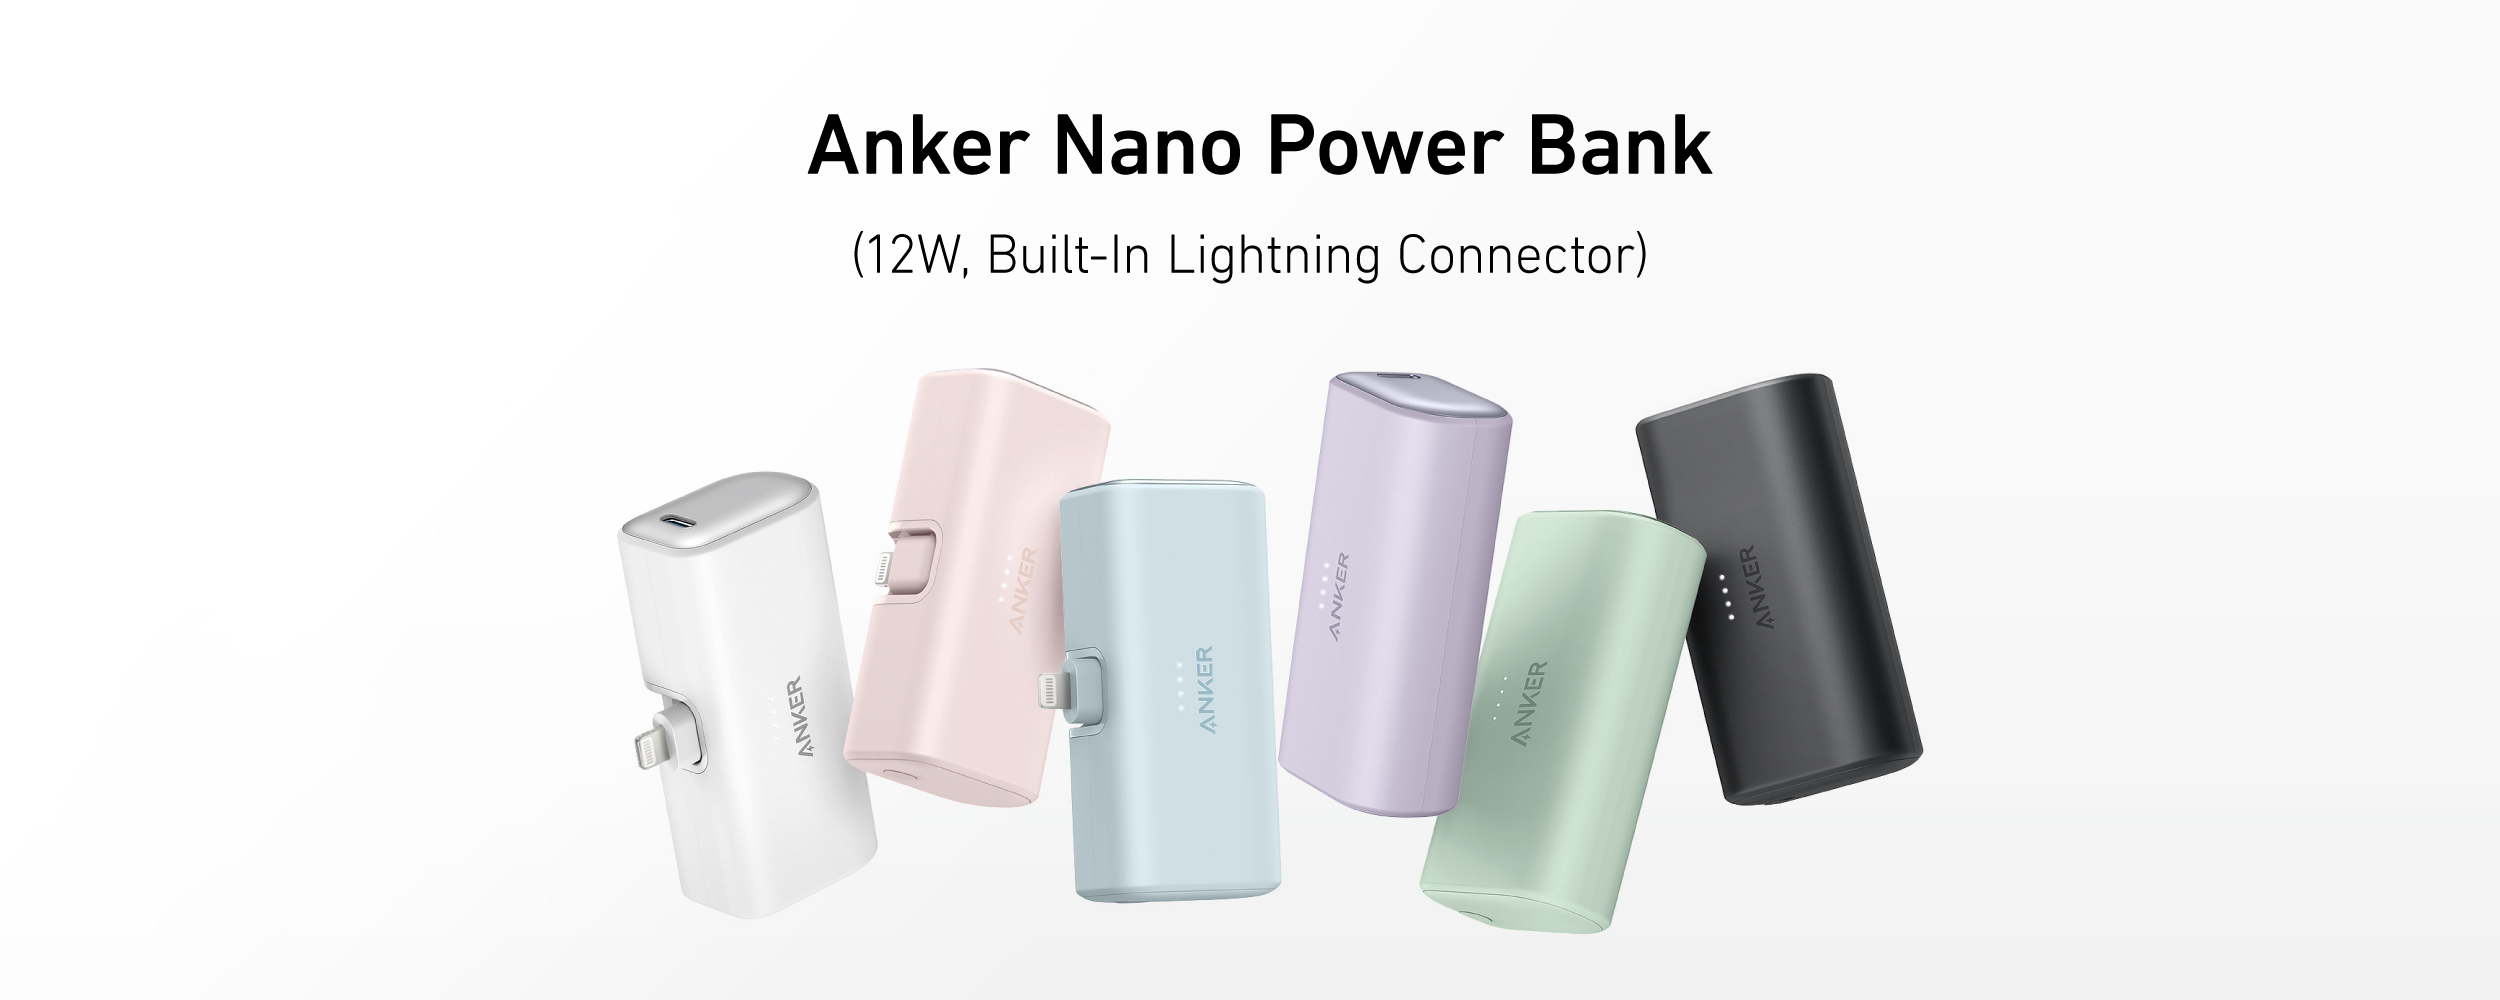 LightningケーブルなしでiPhoneを充電できるモバイルバッテリー「Anker Nano Power Bank」が発売